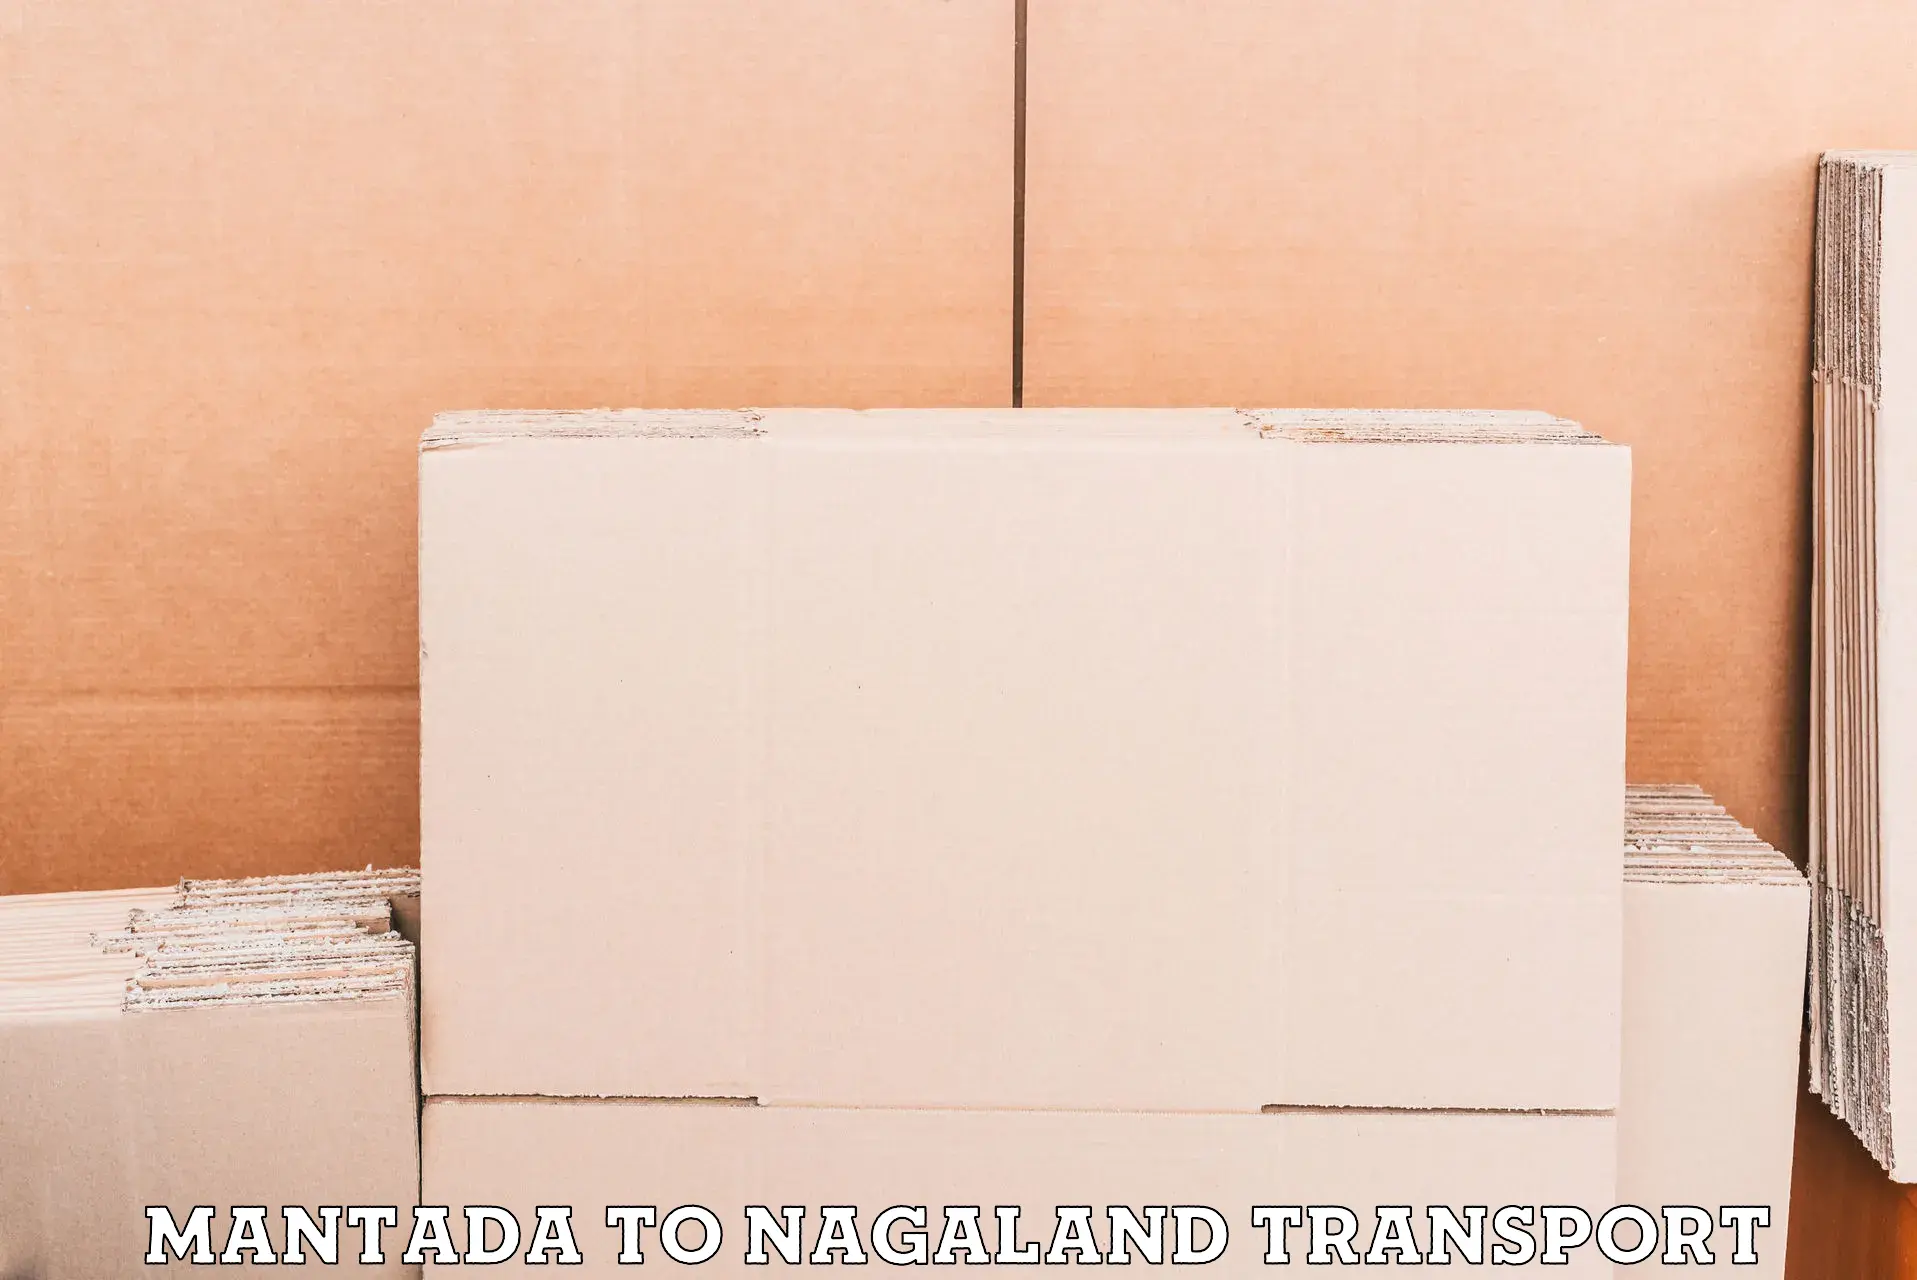 Air cargo transport services Mantada to Nagaland